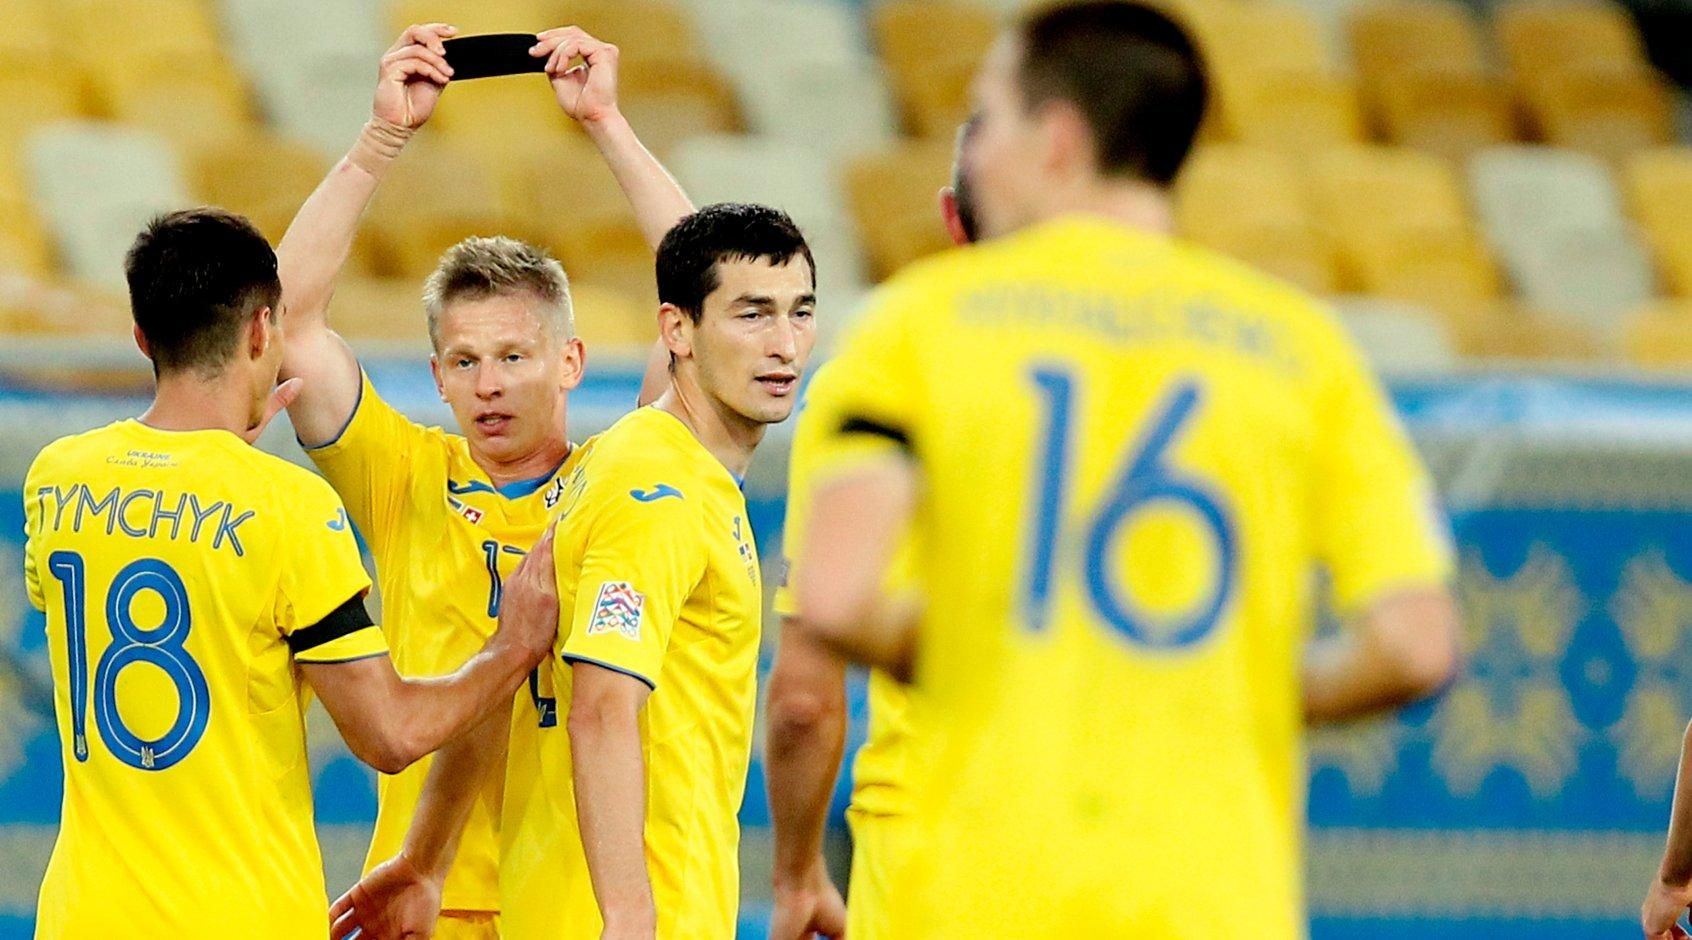 УЕФА вынесет решение по матчу Швейцария – Украина на следующей неделе, – СМИ